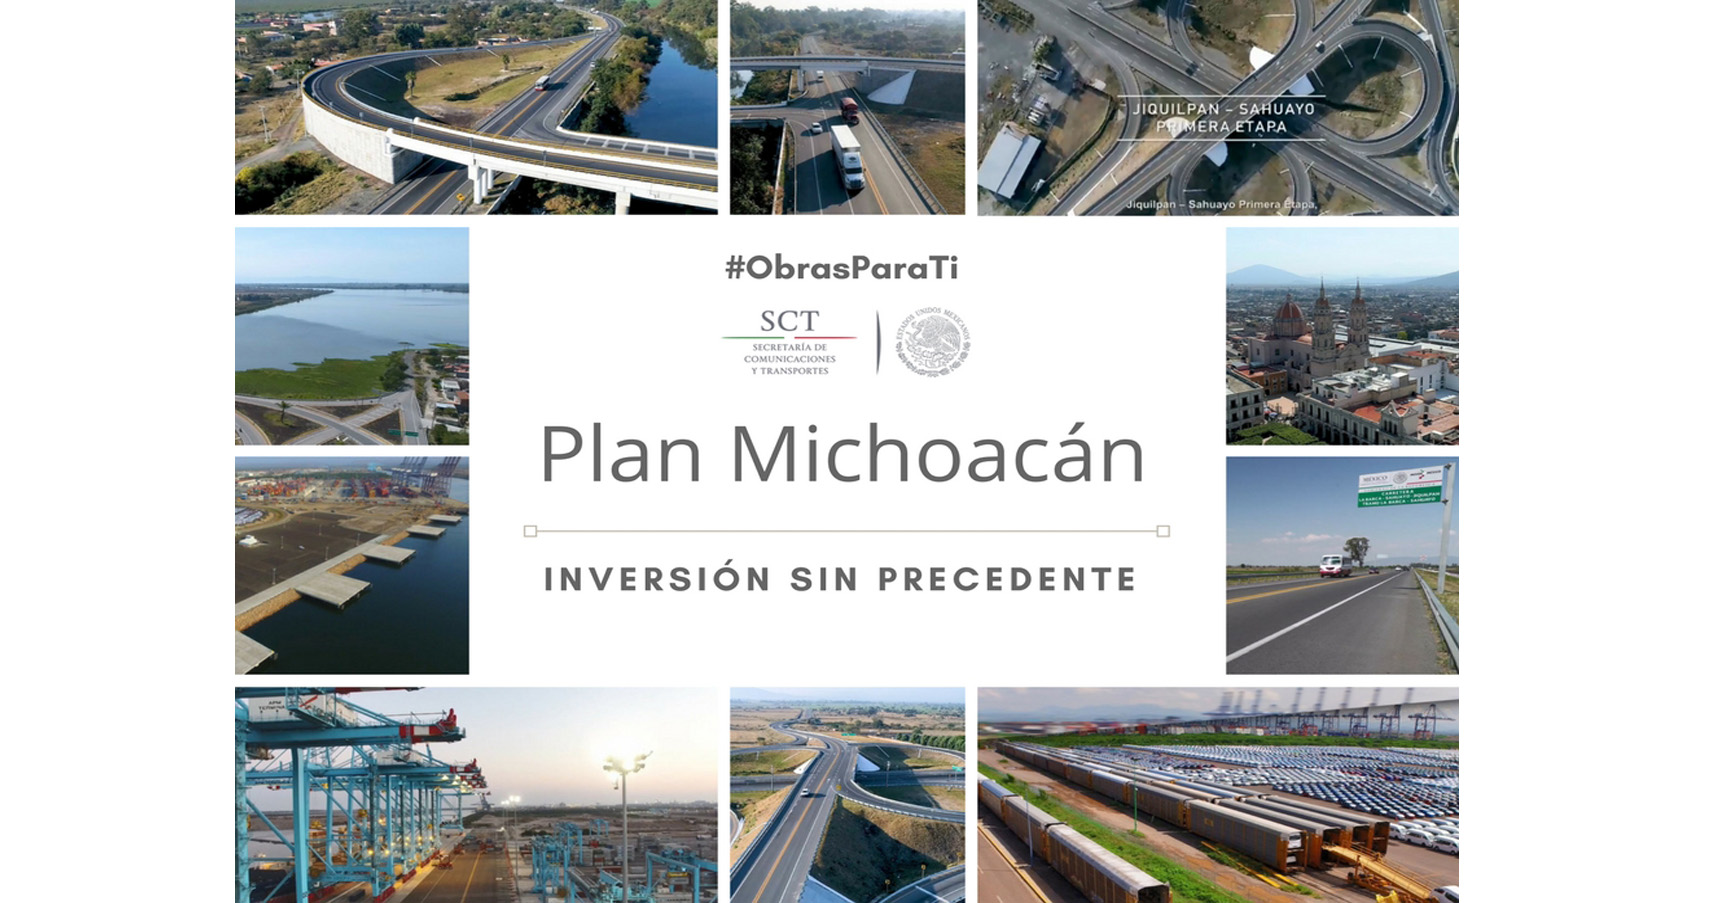 #ObrasParaTi| Entrega de Infraestructura en Michoacán